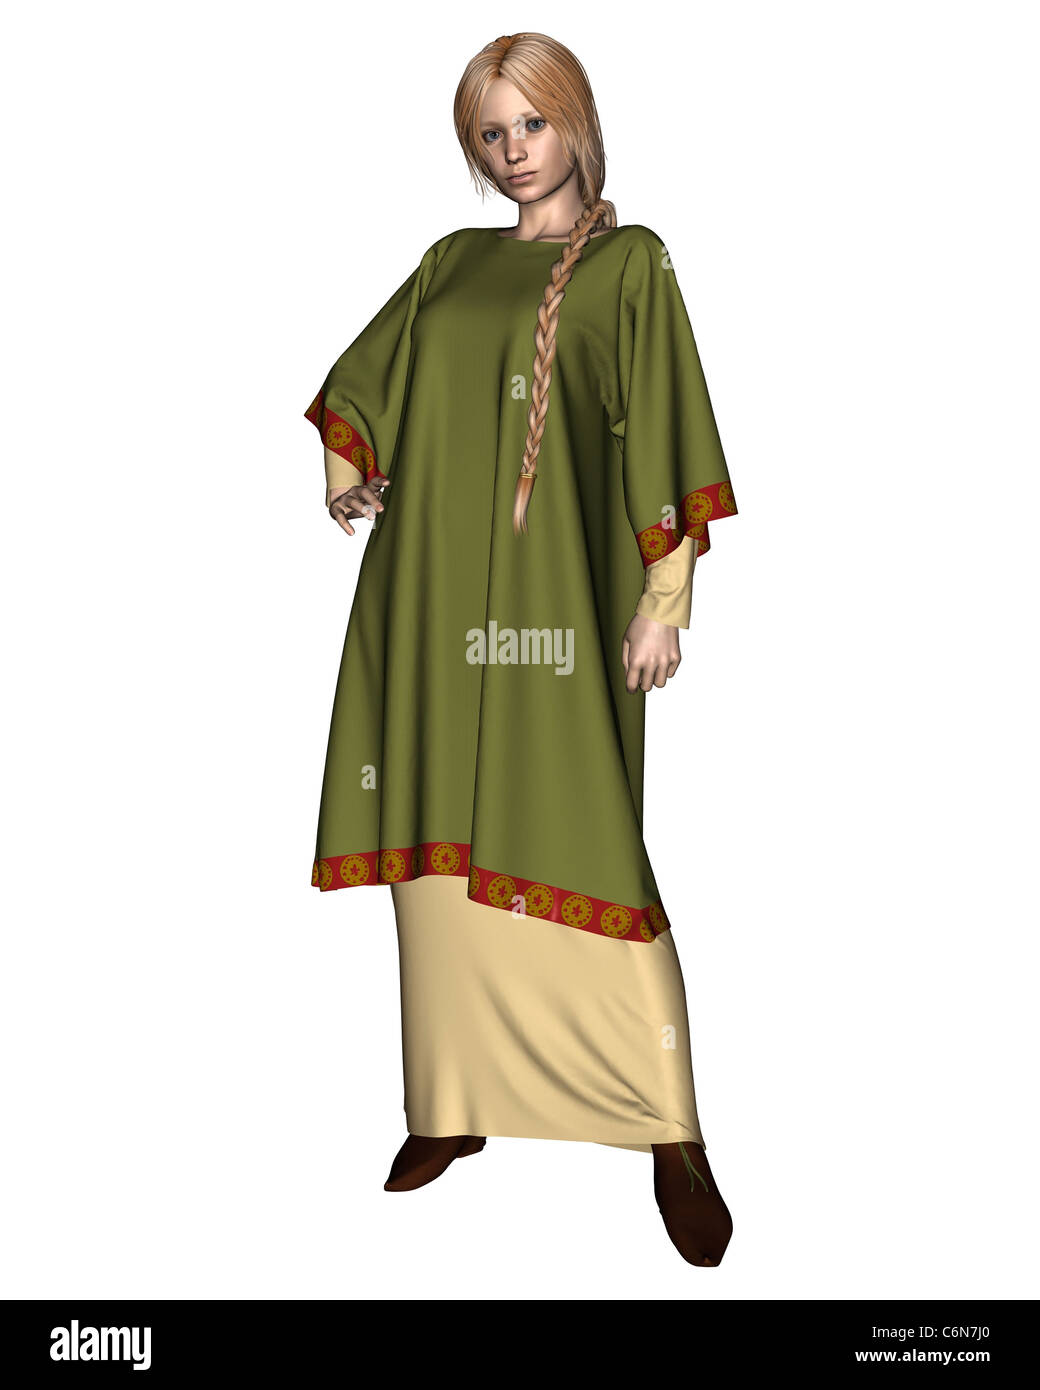 Saxon ou Viking Femme en tunique verte Banque D'Images